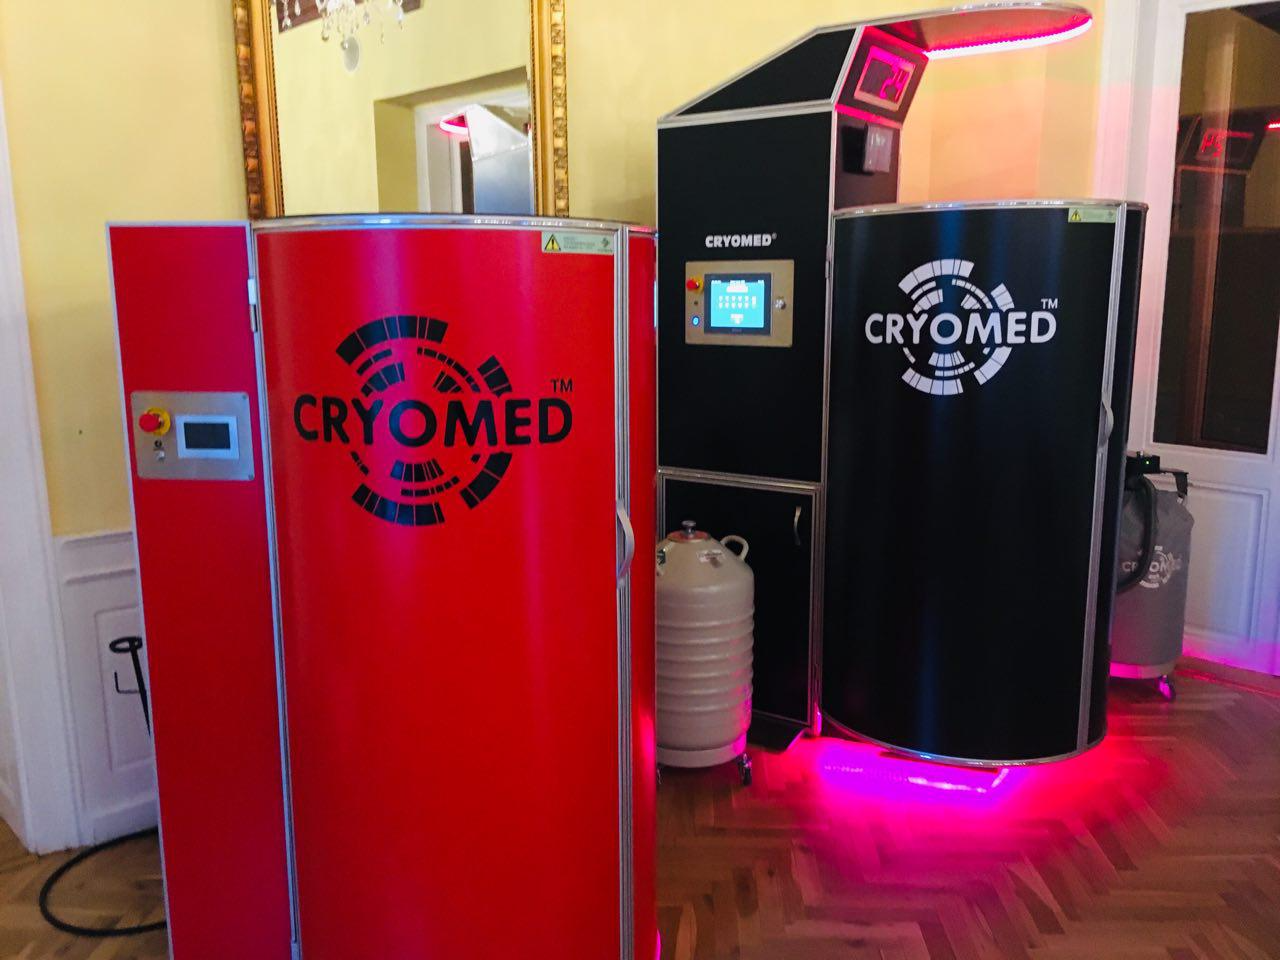 Cryomed, 1. Yıllık Genel Kurul Toplantısı’nda tüm distribütörlerini bir araya getirdi.